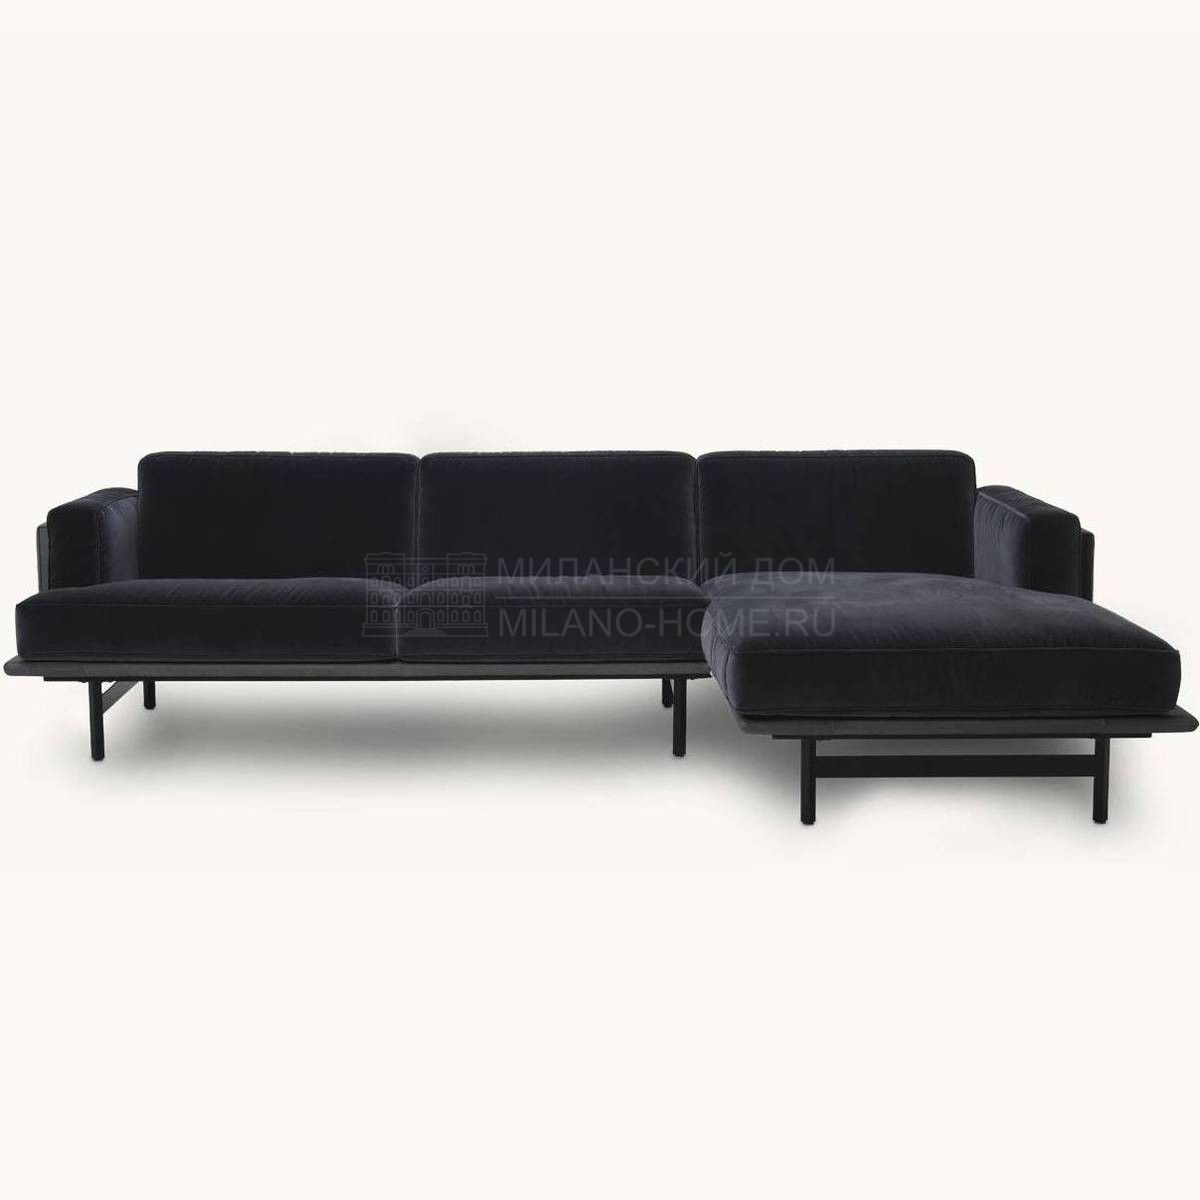 Угловой диван DS-175 modular sofa из Швейцарии фабрики DE SEDE